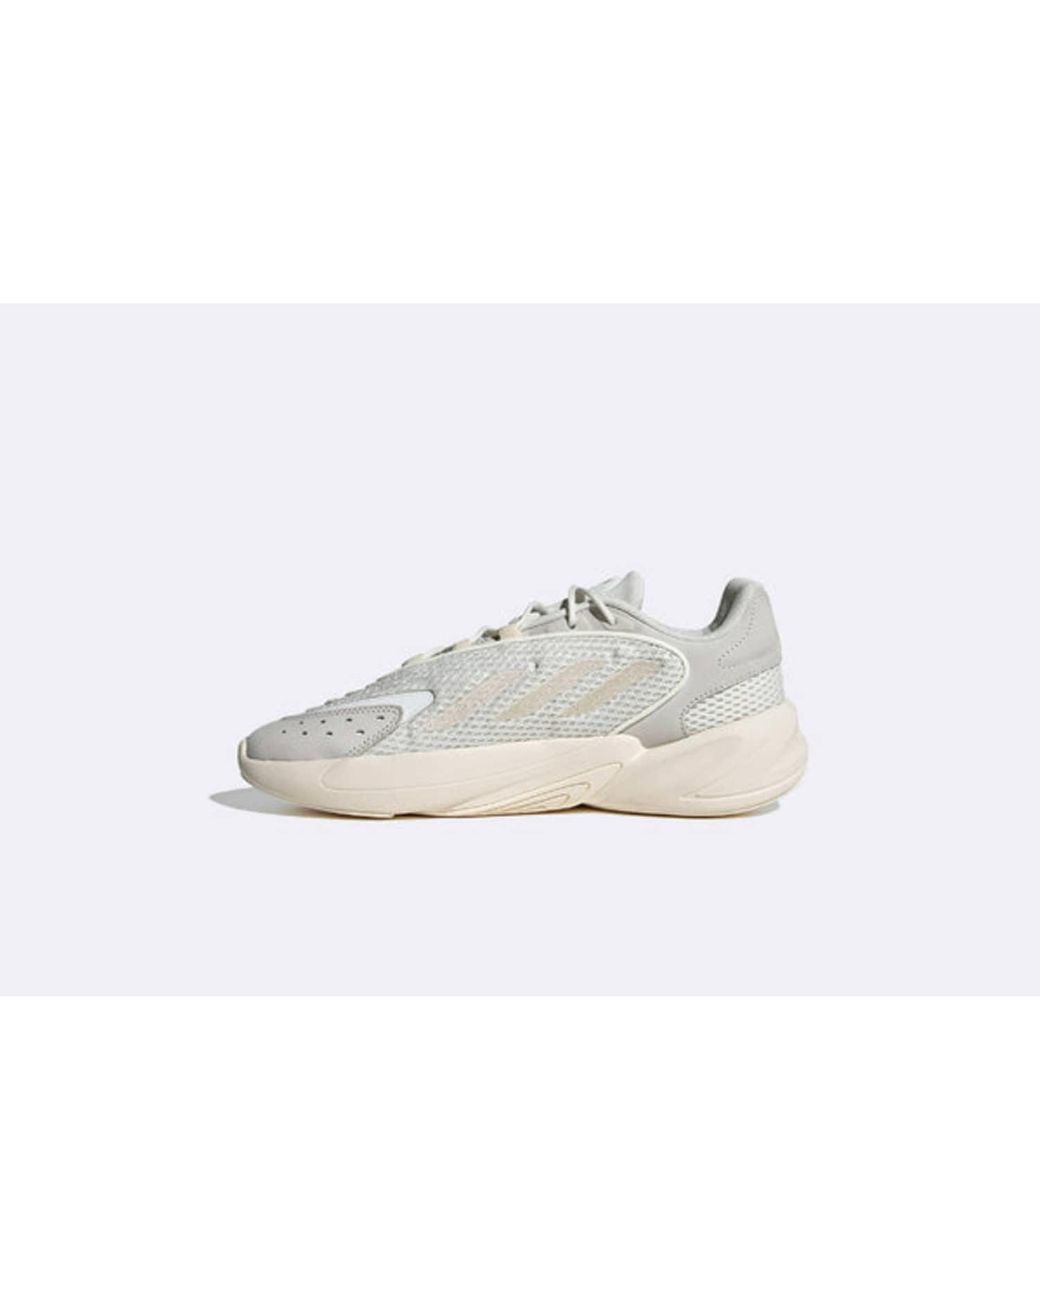 Adidas – Ozelia Off White/White